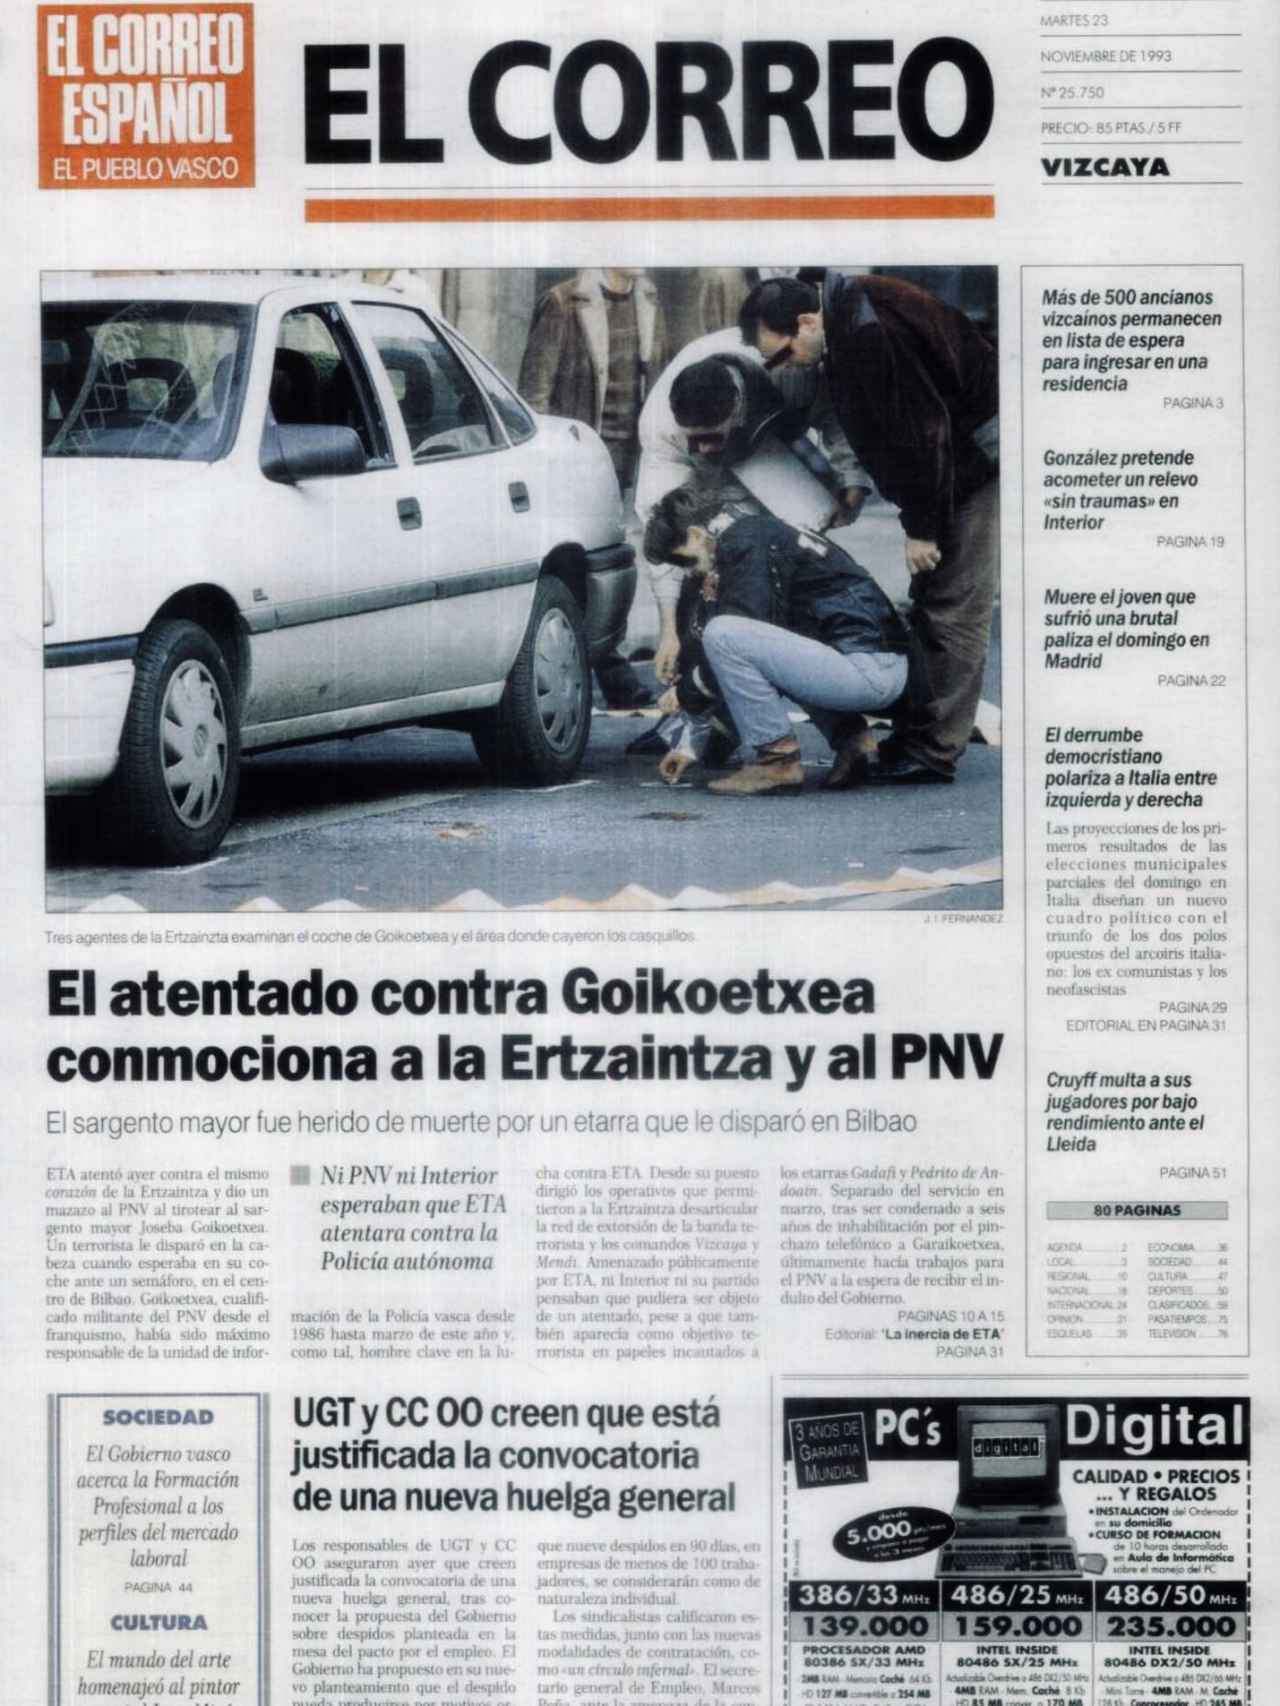 Portada de un periódico recogiendo las reacciones tras el asesinato de Goikoetxea.